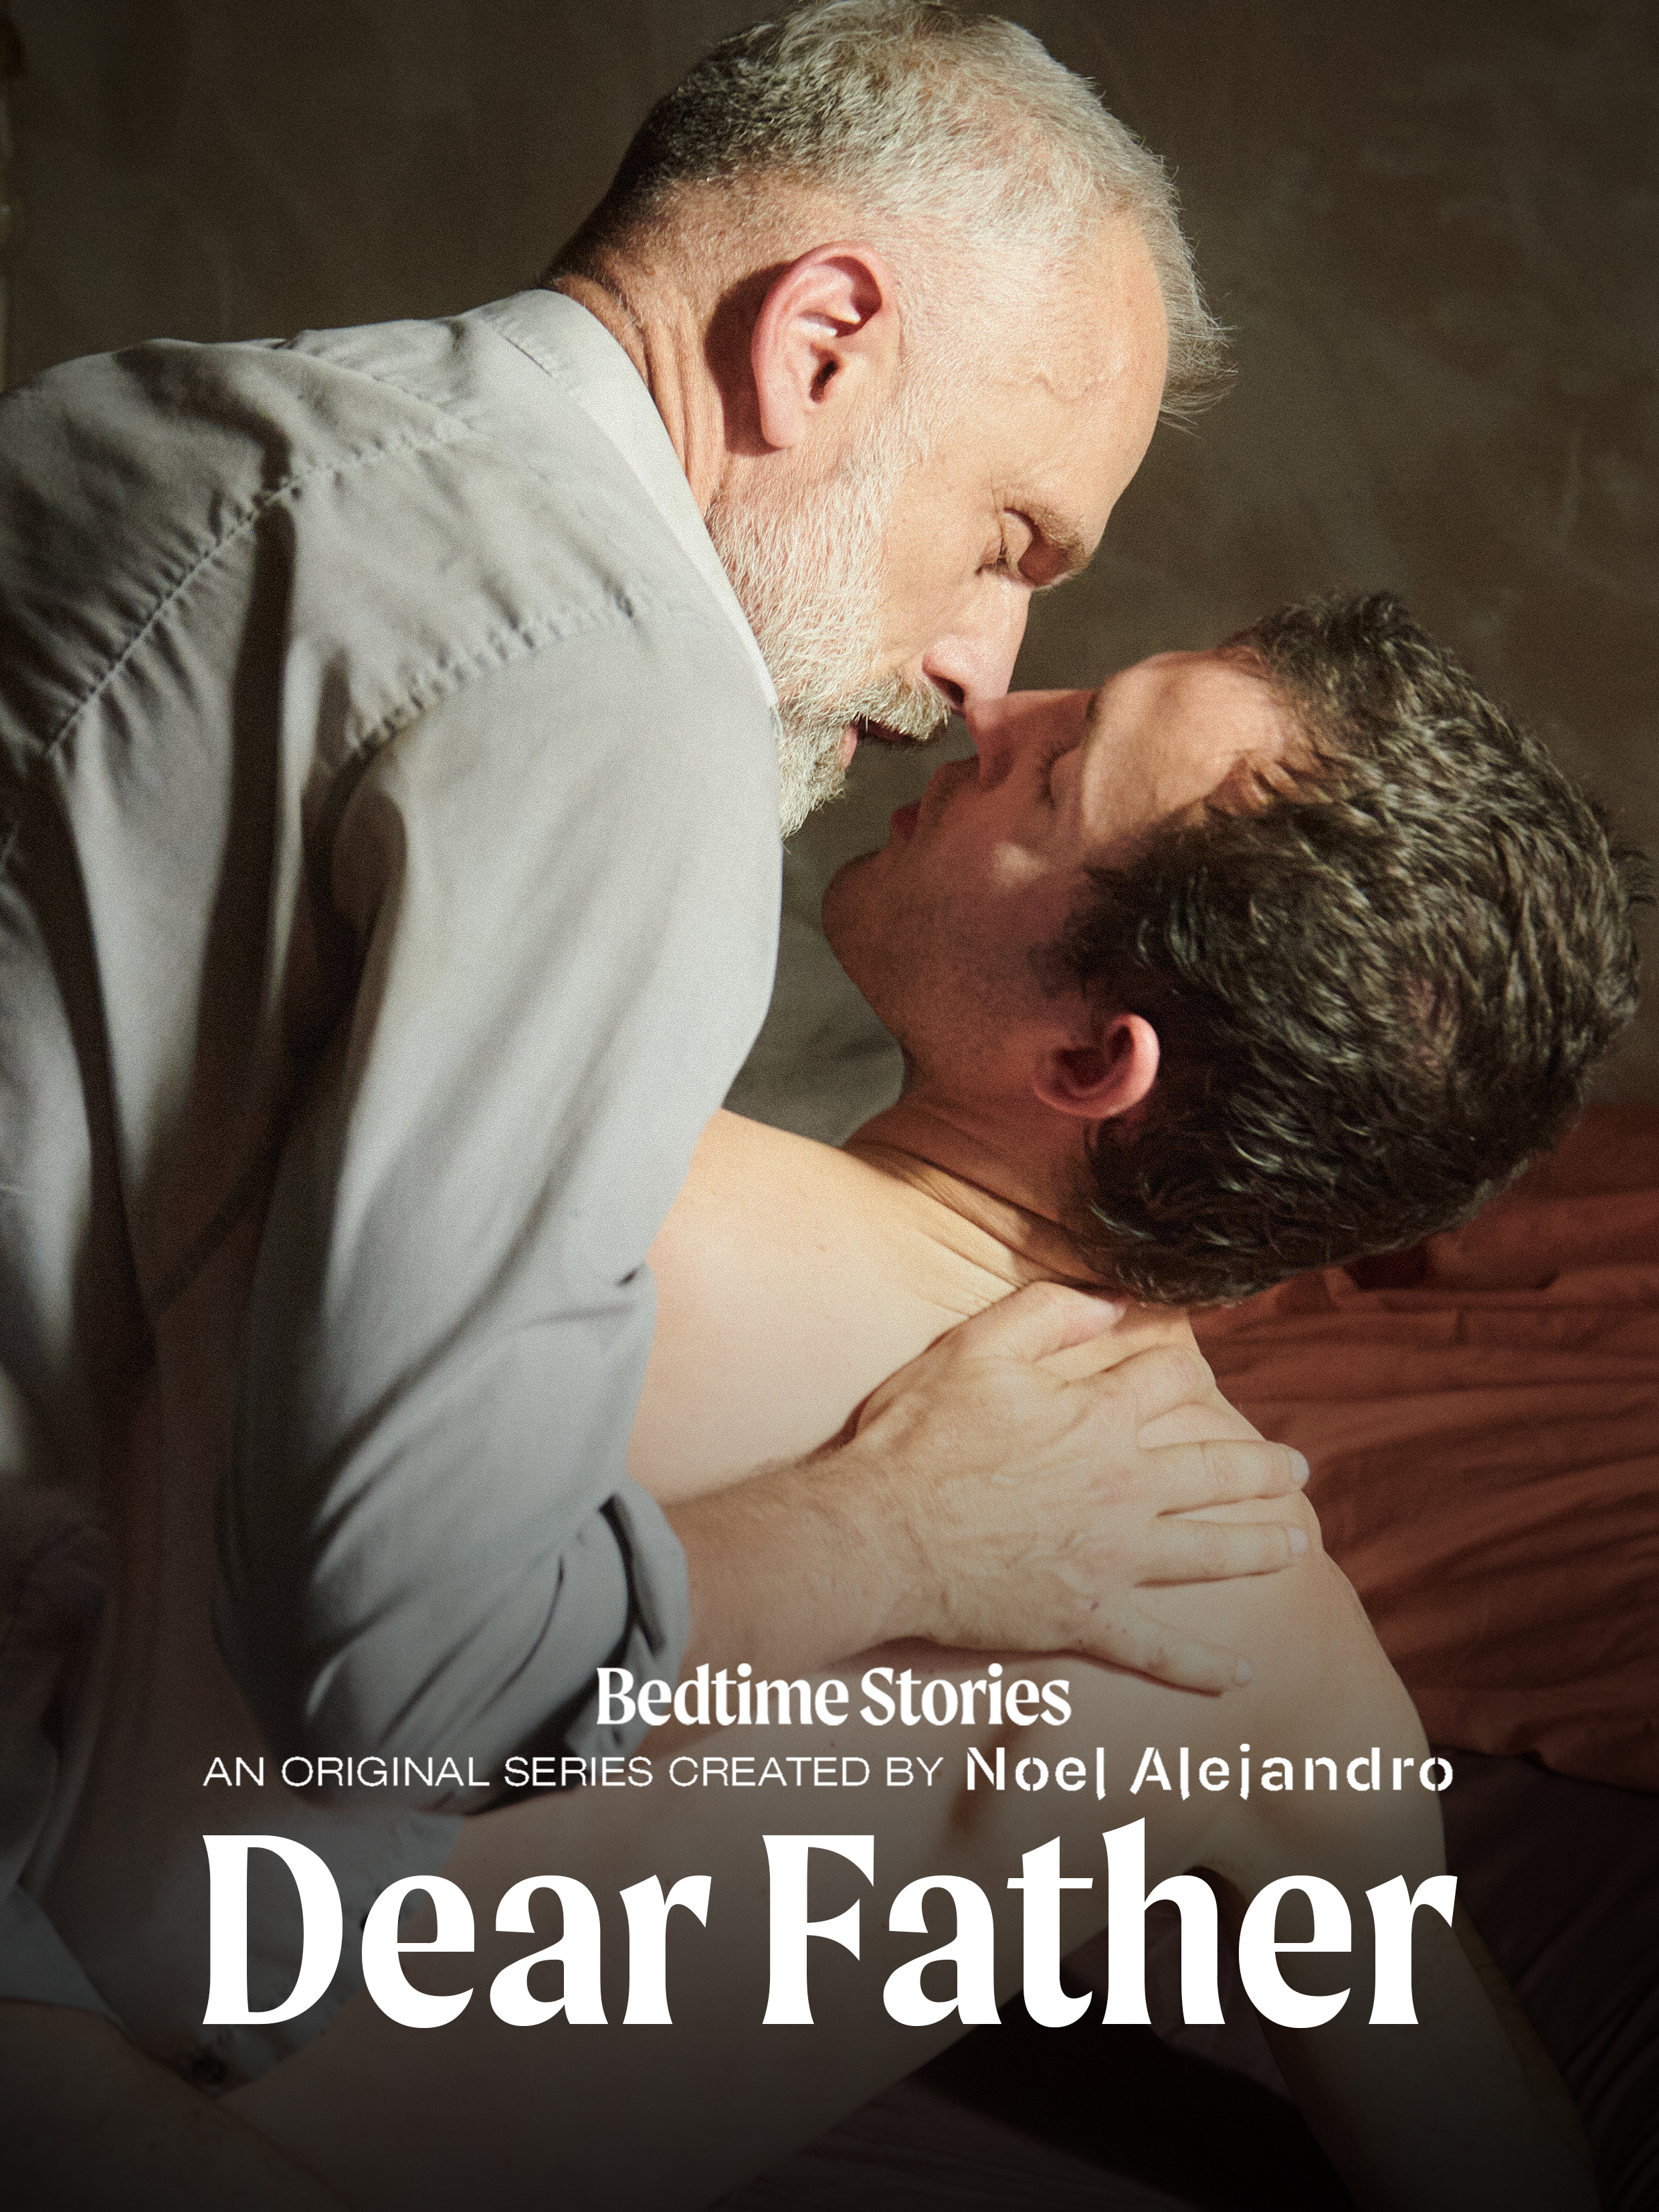 Dear father gay porn ❤️ Best adult photos at gayporn.id